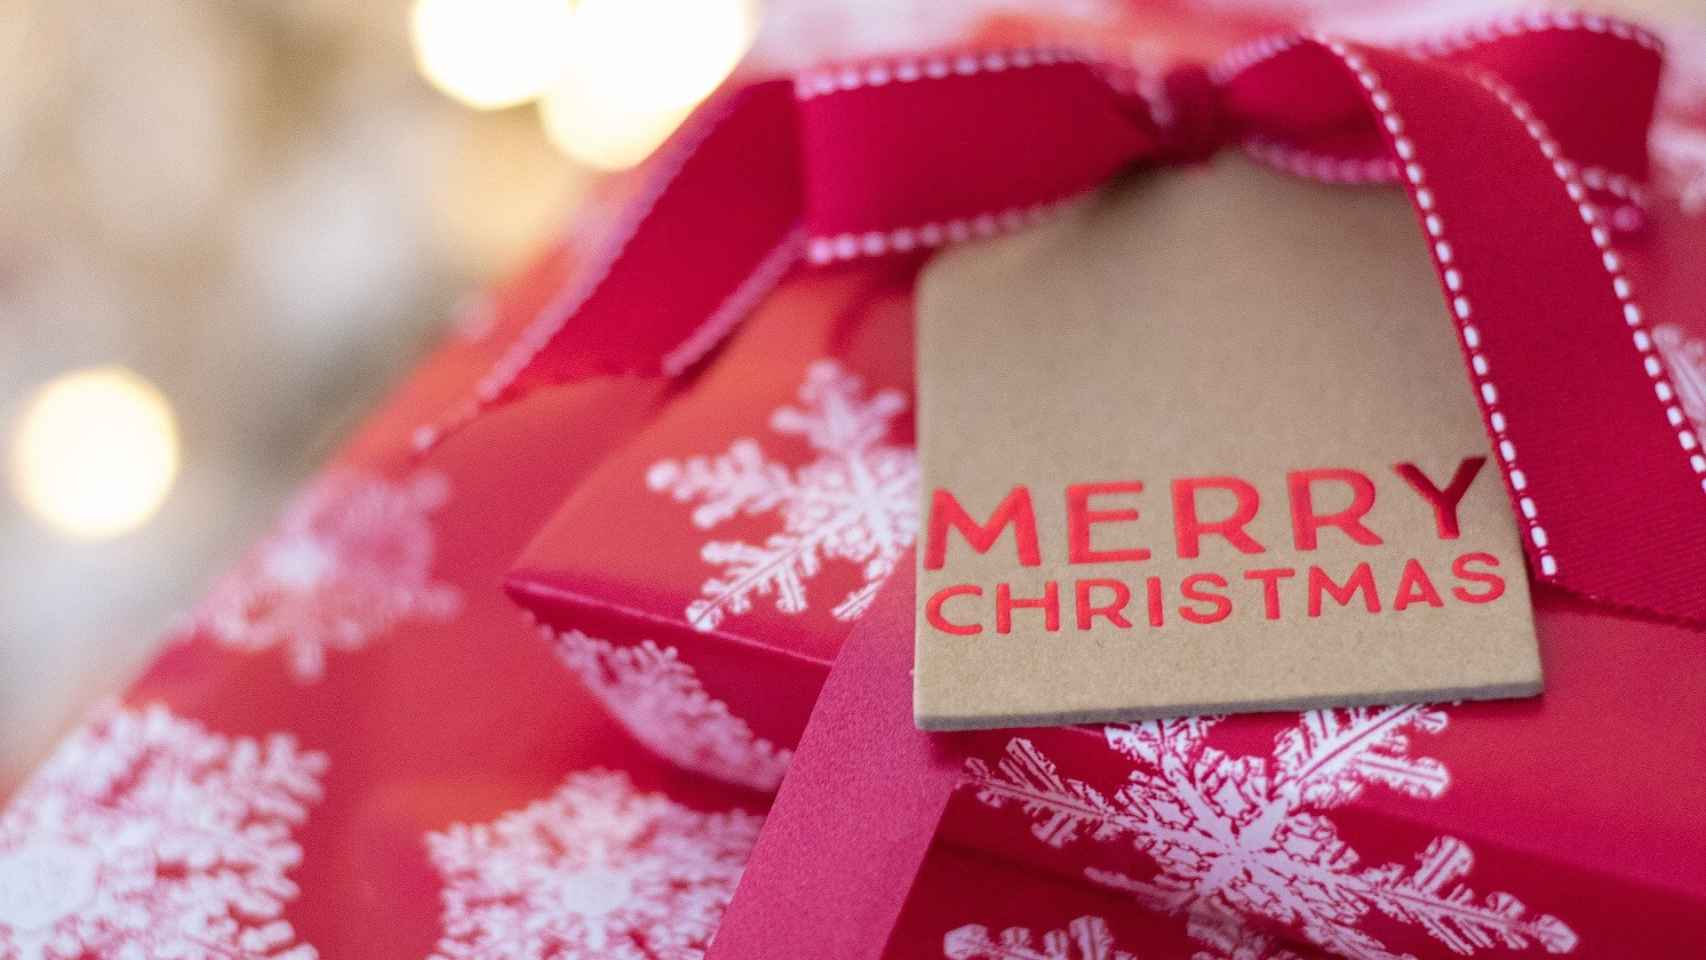 Box de regalos: ¿cómo personalizar tus regalos de Navidad?